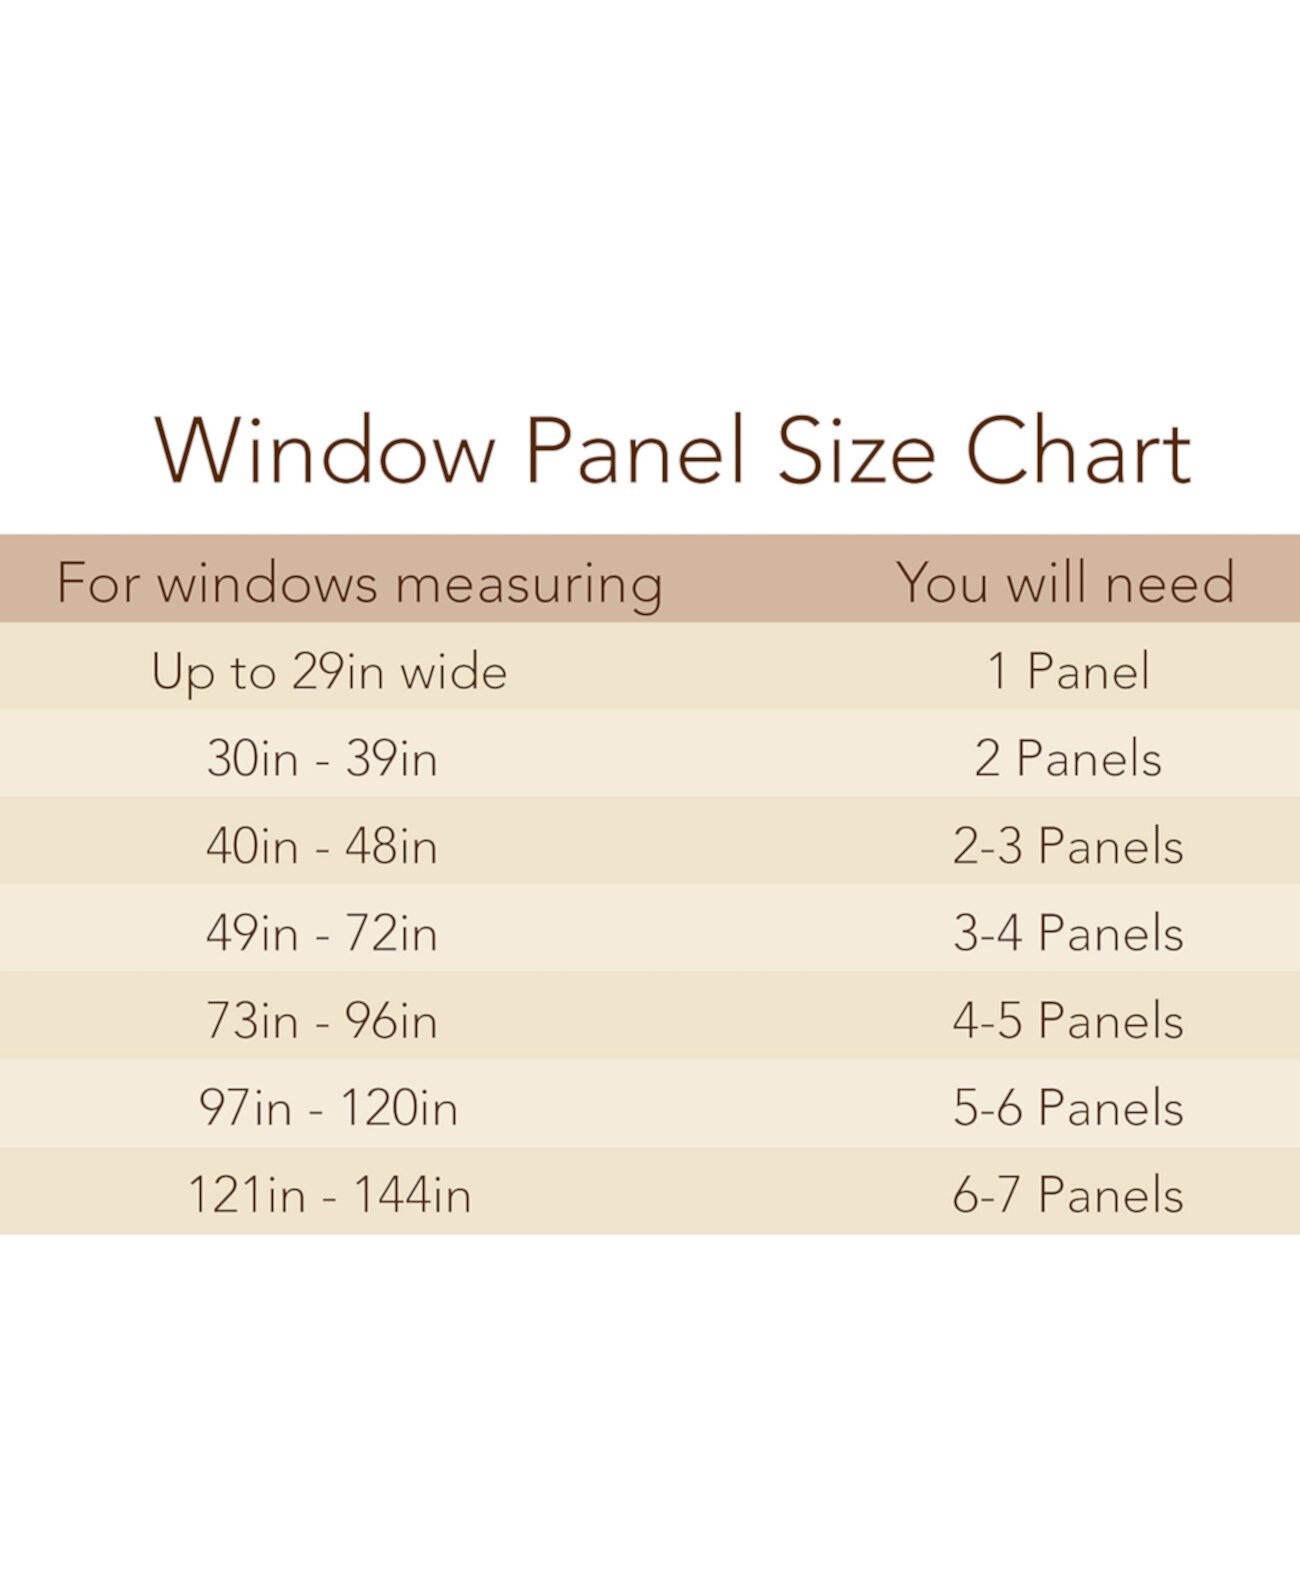 Прозрачная панель для штор Campbell с текстурированным принтом размером 50 x 84 дюйма Miller Curtains